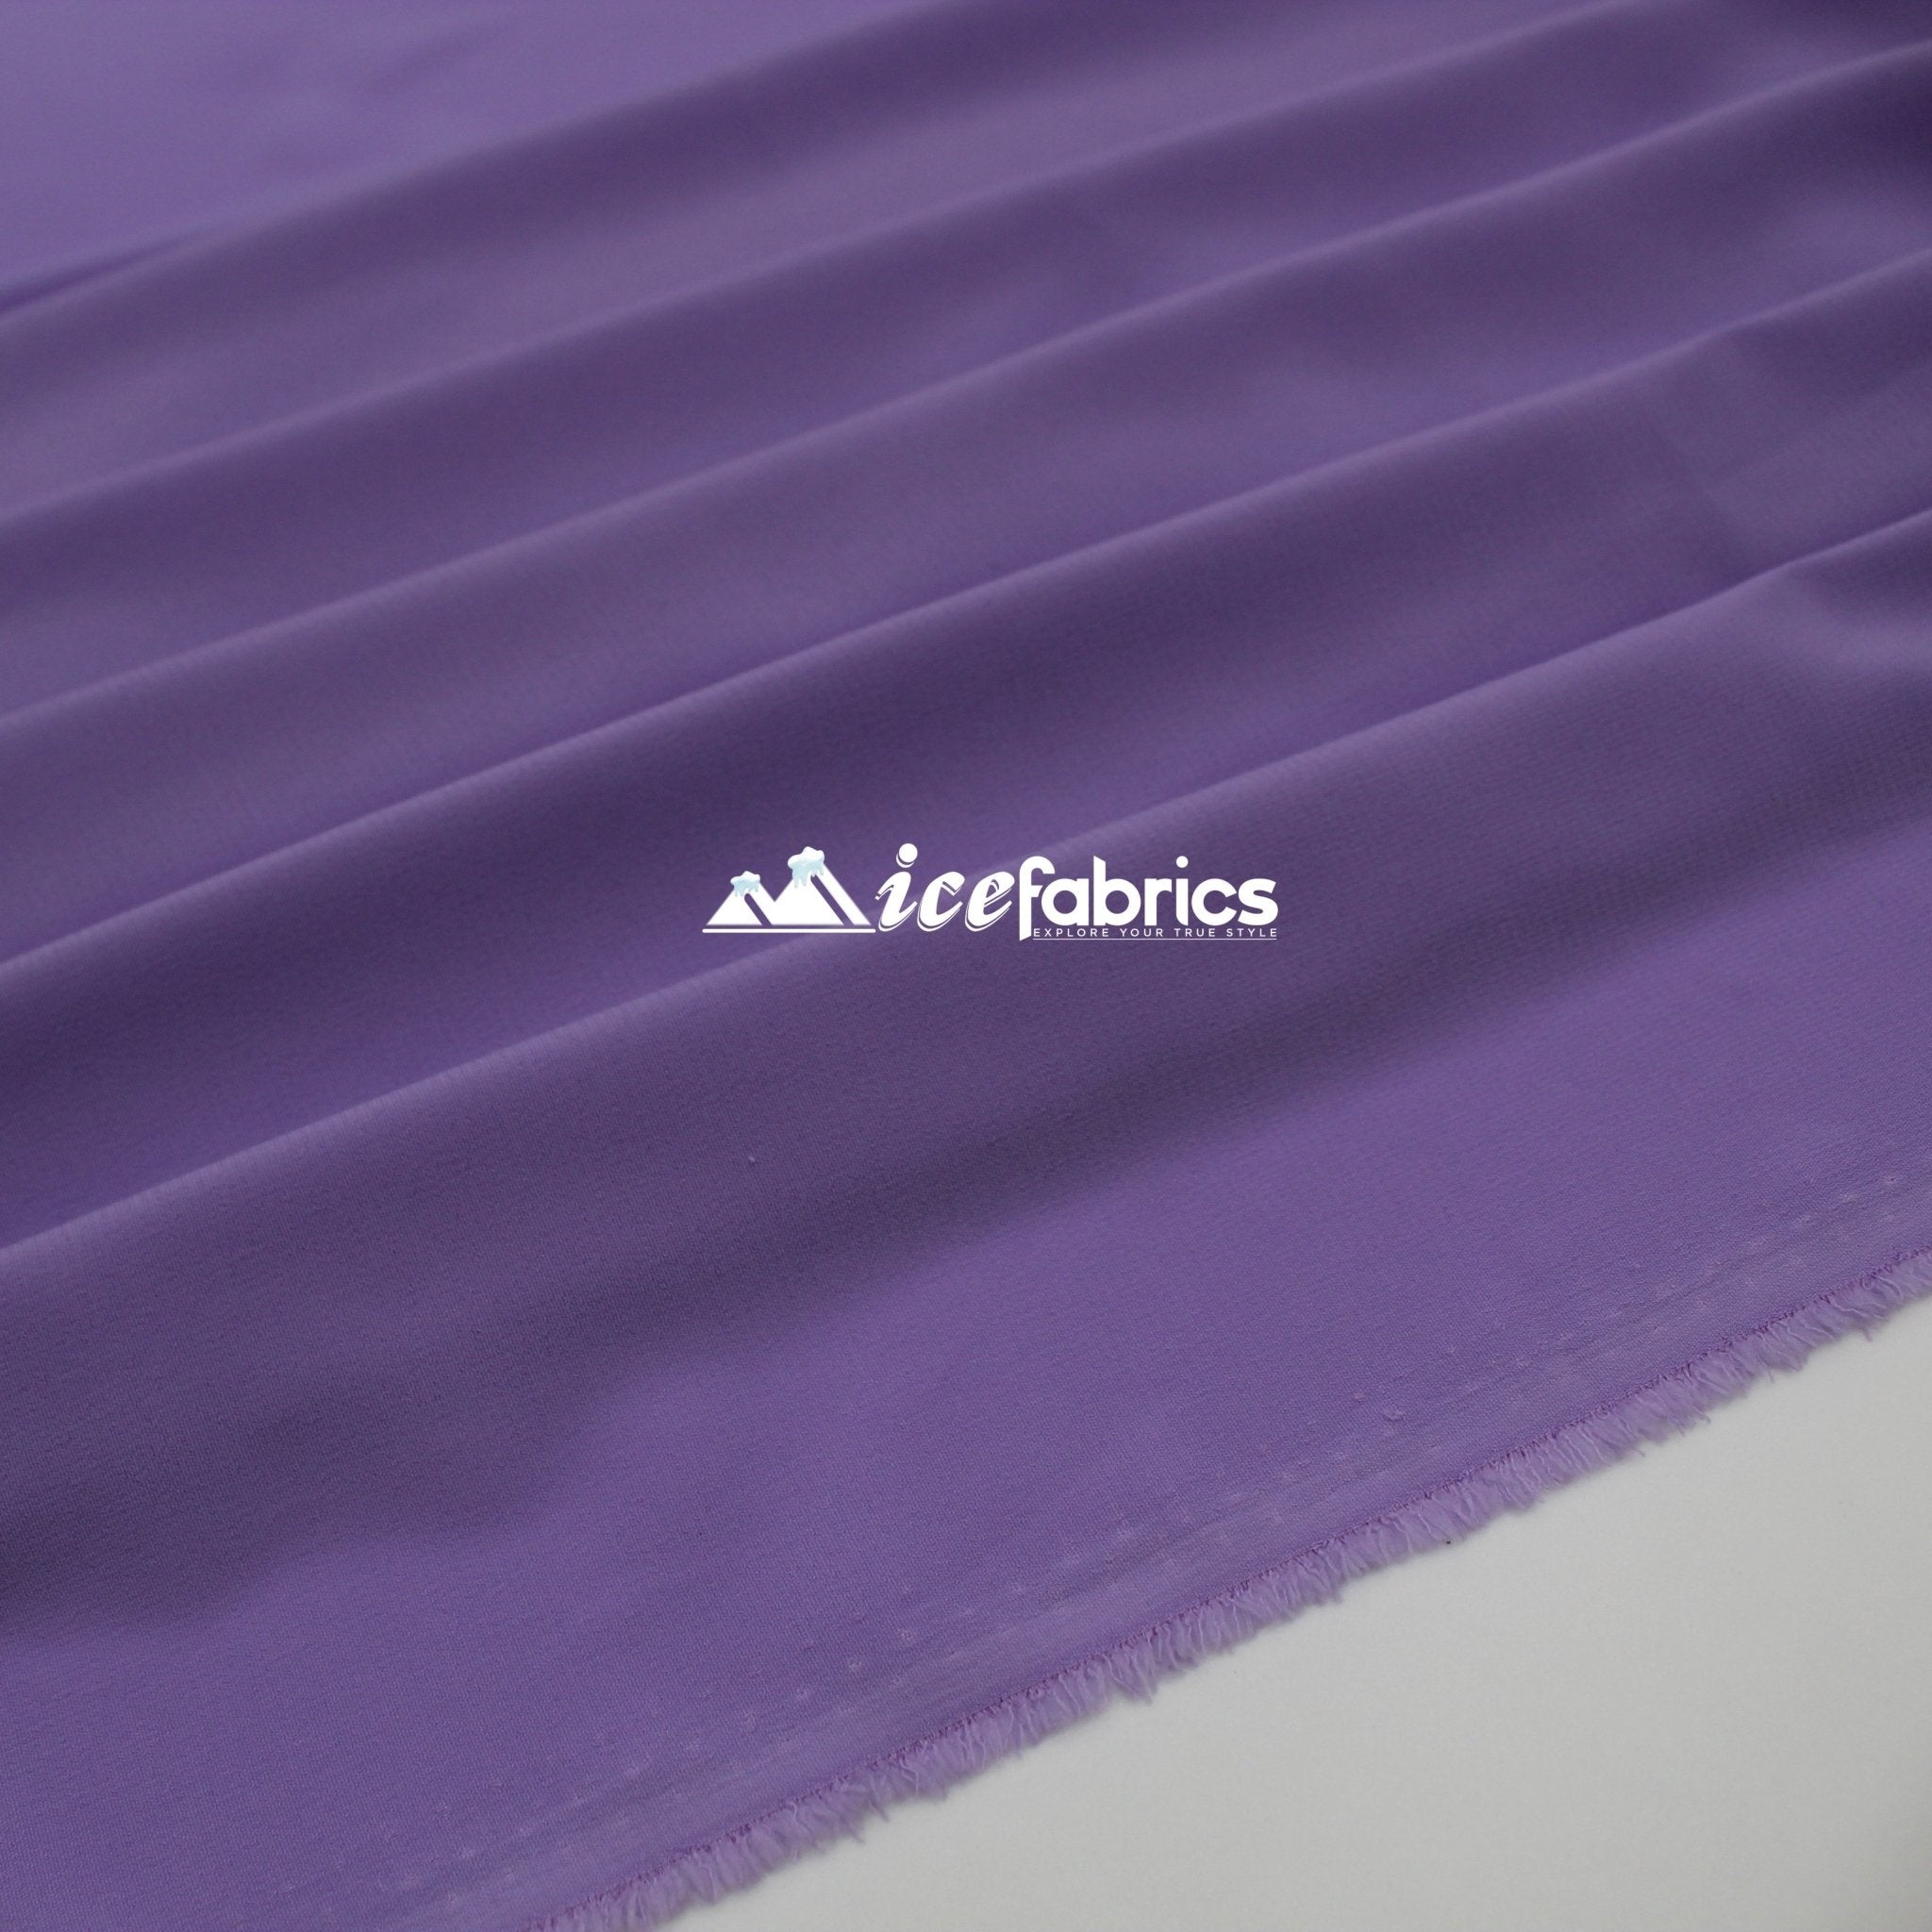 Silk Fabric Stretch Chiffon Fabric/ Spandex Fabric/ LavenderChiffon FabricICE FABRICSICE FABRICSLavenderPer YardSilk Fabric Stretch Chiffon Fabric/ Spandex Fabric/ Lavender ICE FABRICS